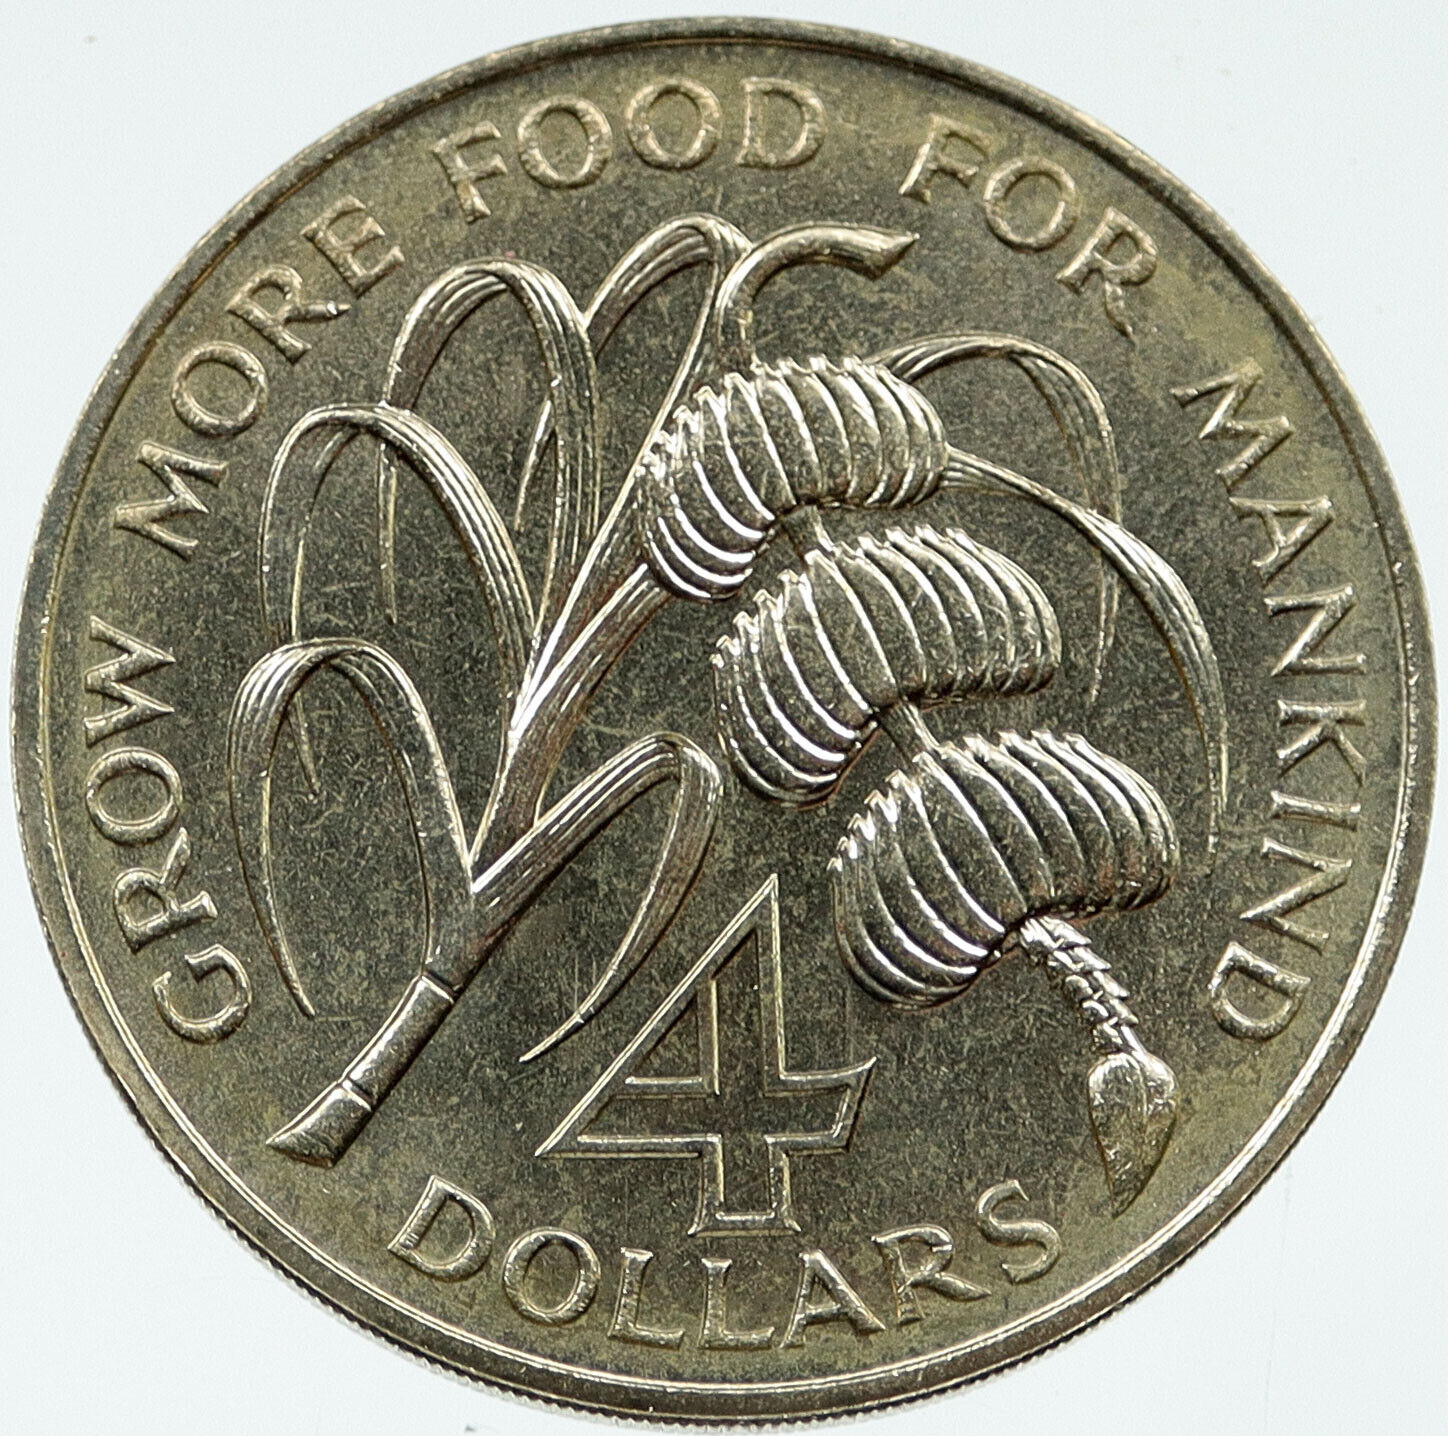 1970 BARBADOS UN FAO Sugarcane Banana Antique Vintage 4 Dollars Coin i117318